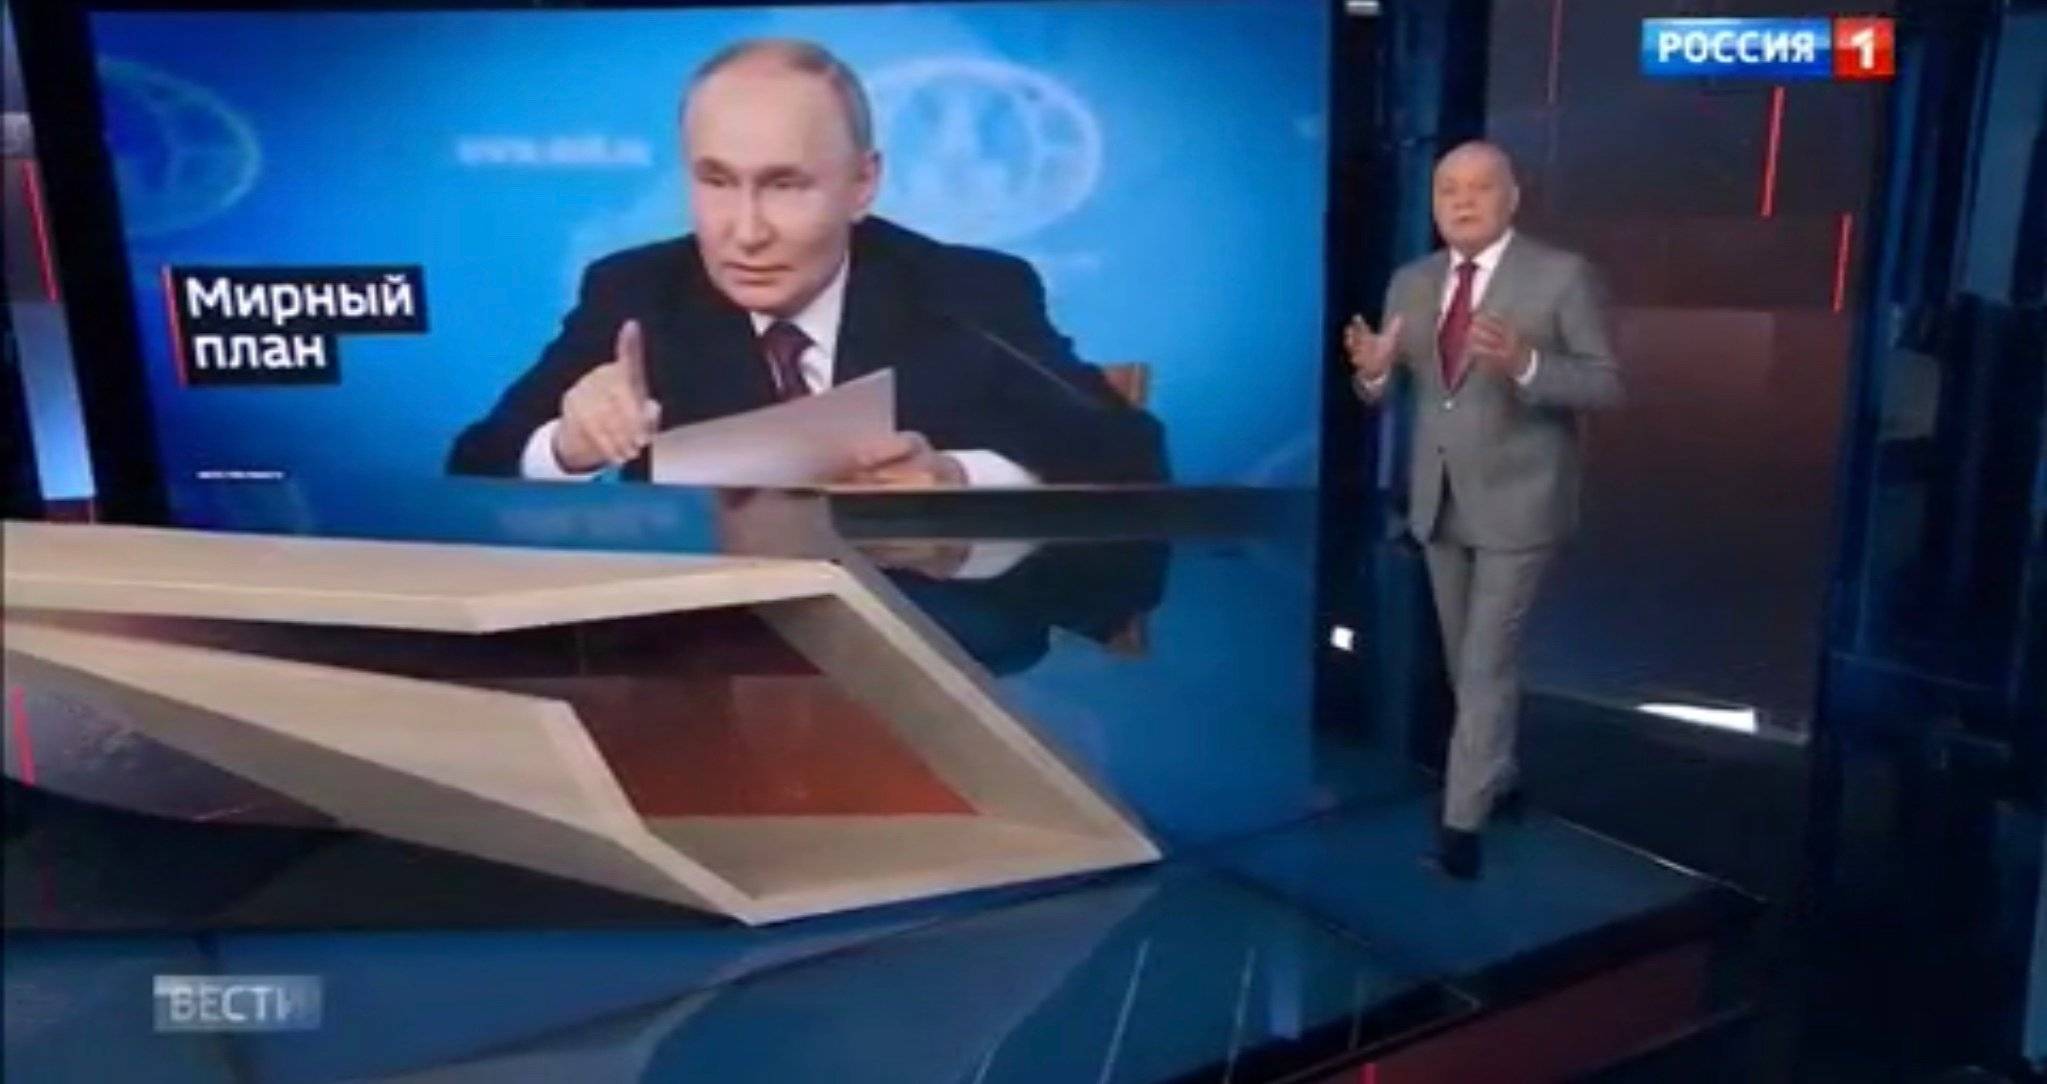 Studio telewizyjne. Prezenter - starszy pan (Dmitrij Kisielow) gestykuluje. na ekranie - zdjęcie {utina czytającego z kartki